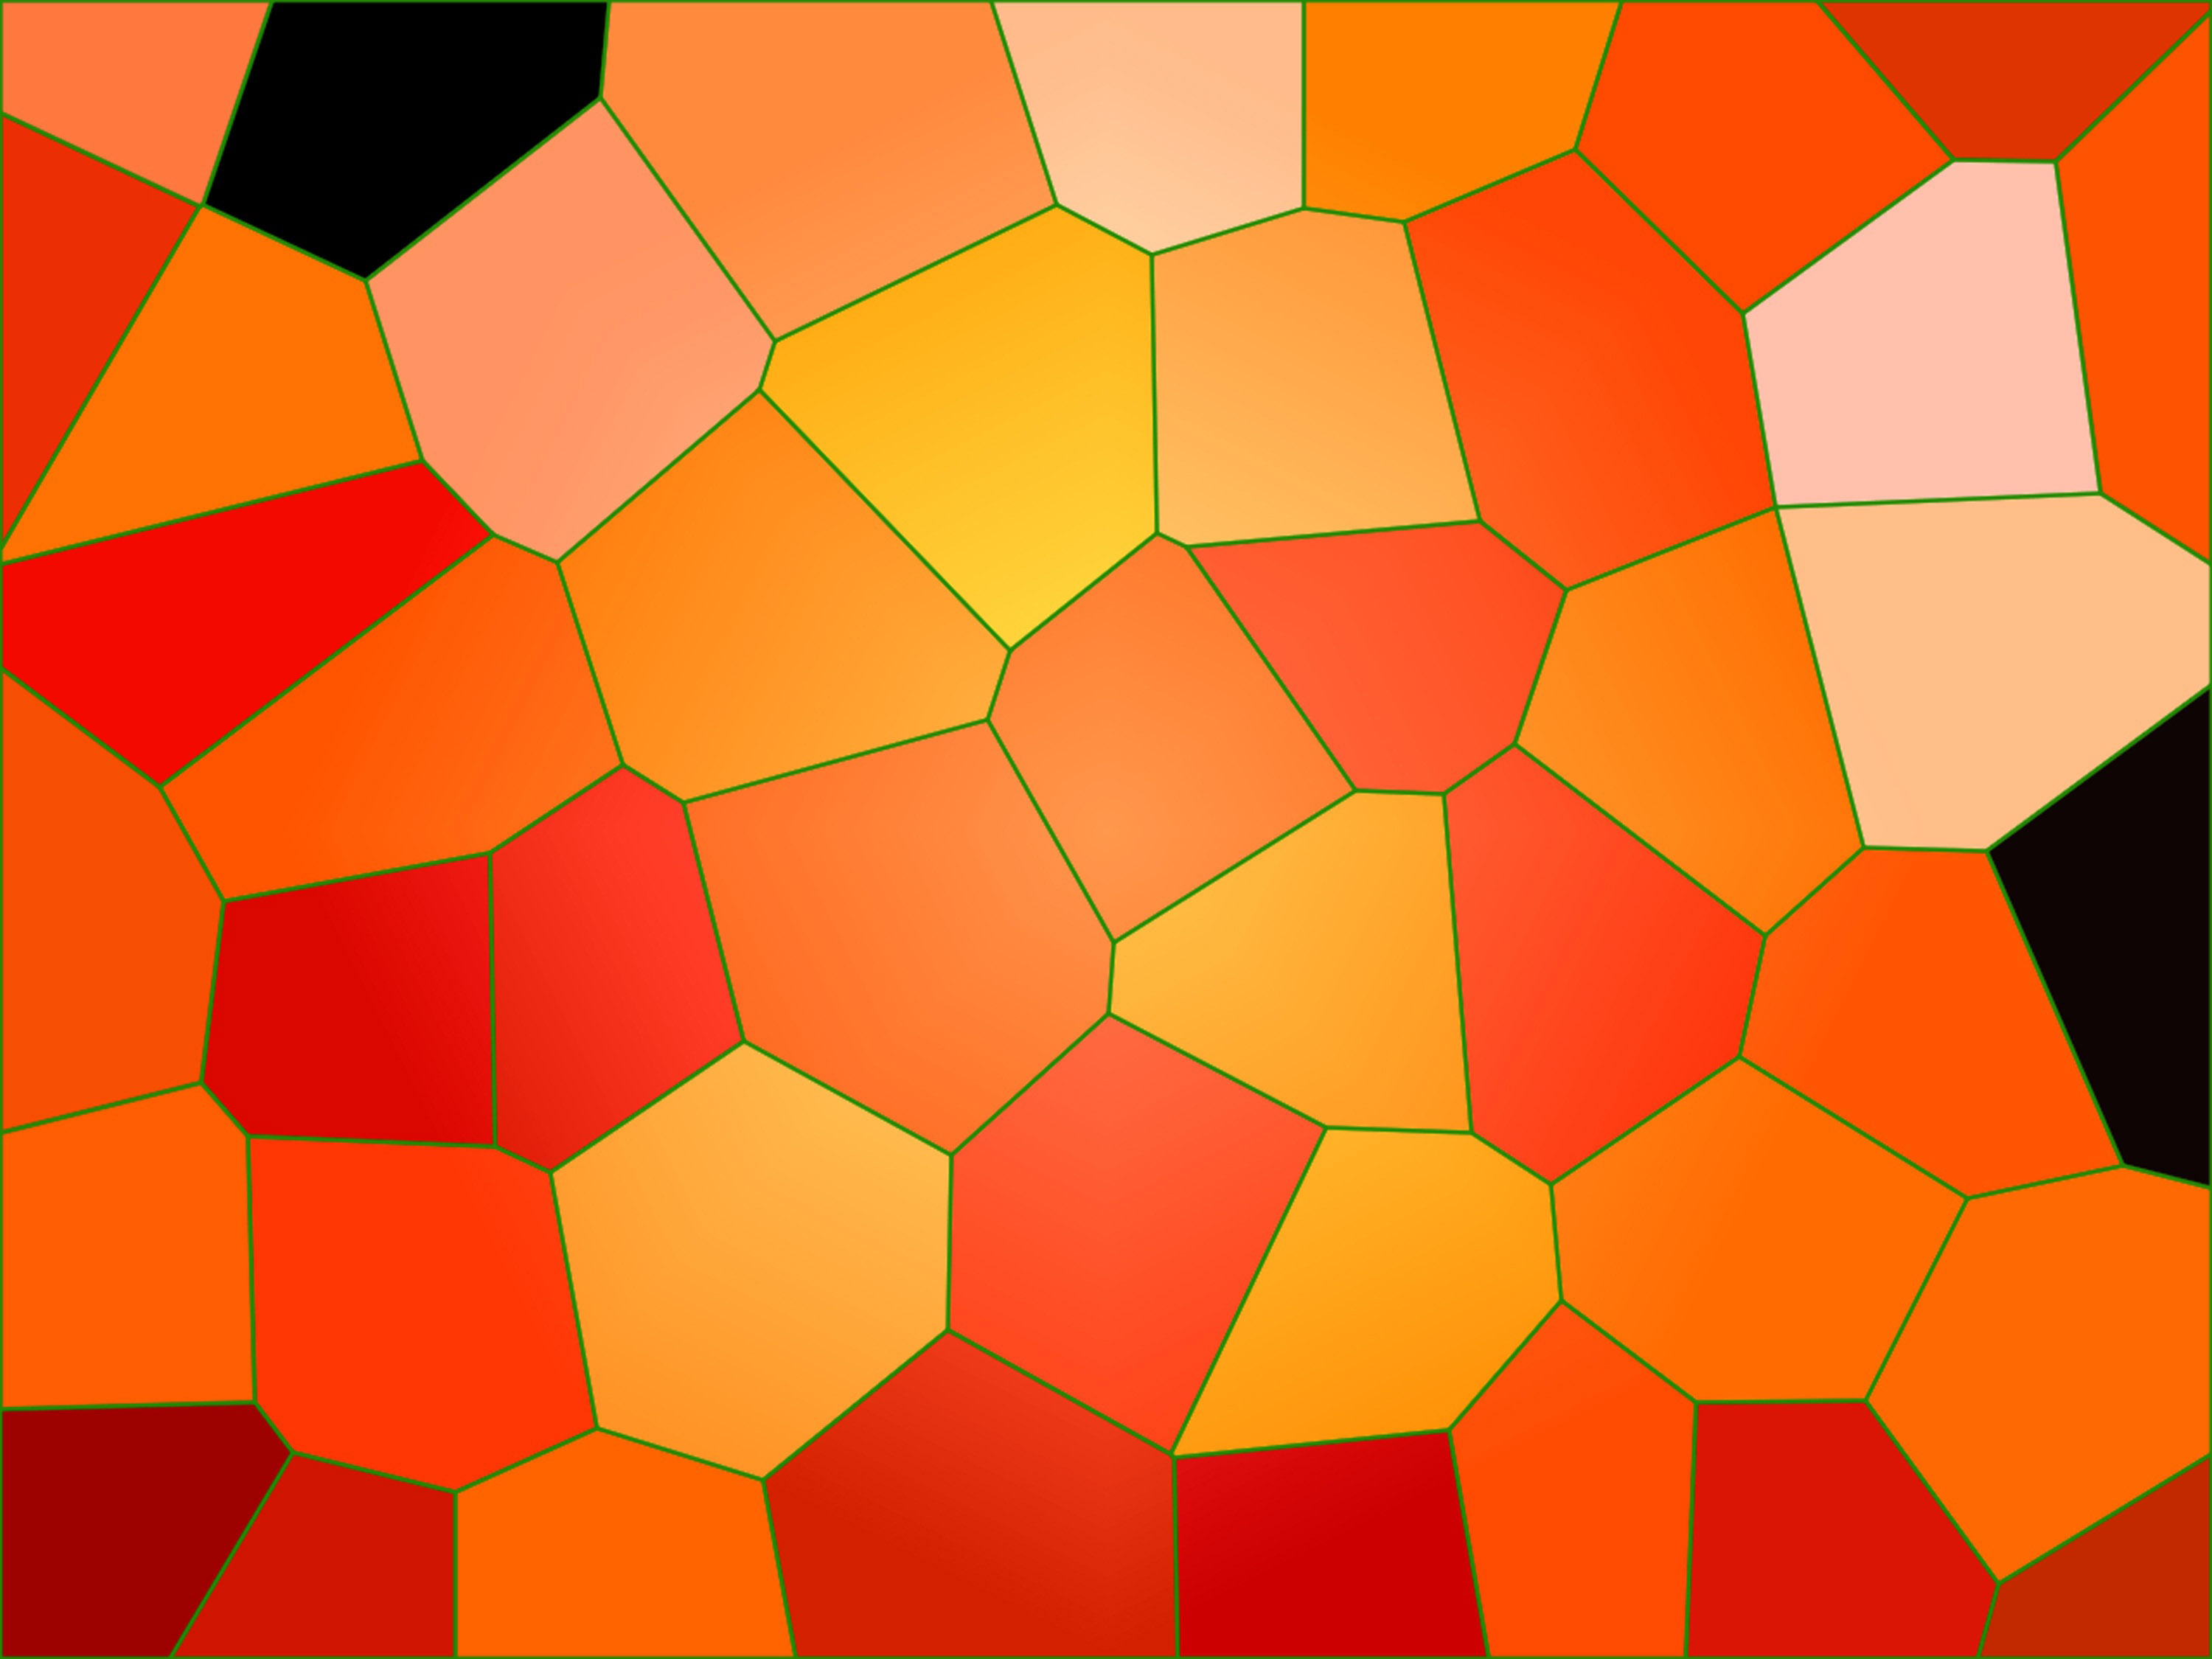 Background pattern of orange Mosaic image - Free stock photo ...